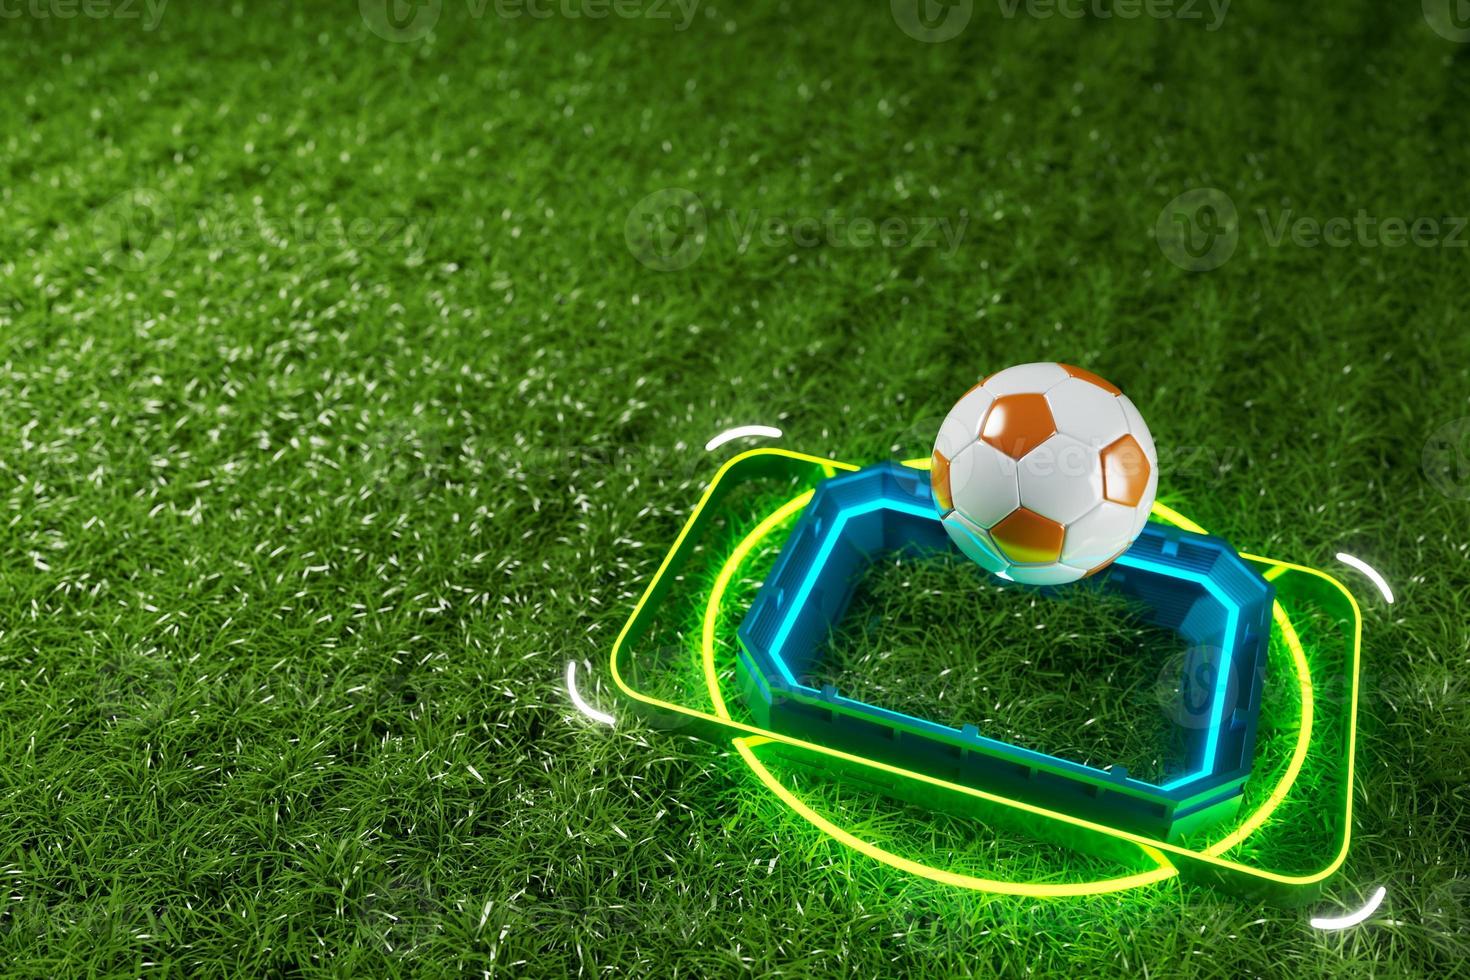 Aplicação online de futebol no smartphone tela de campos de futebol  telefone celular conceito de notícias de futebol canal de esporte  renderização em 3d